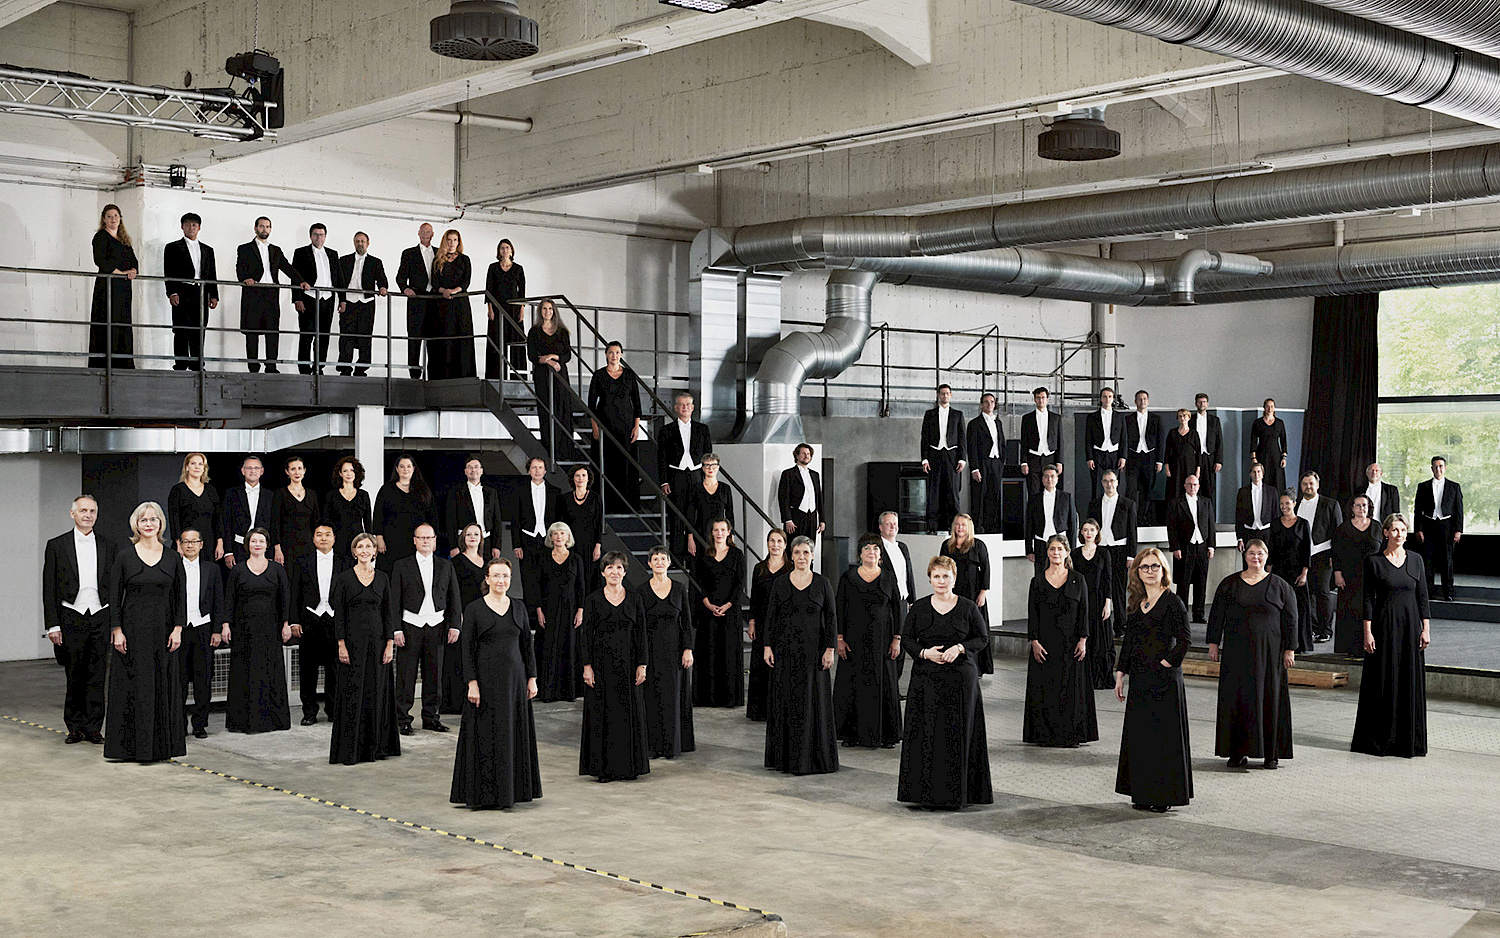 Die Sänger vom Rundfunkchor Berlin stehen in schwarz gekleidet verteilt in einer Industriehalle.